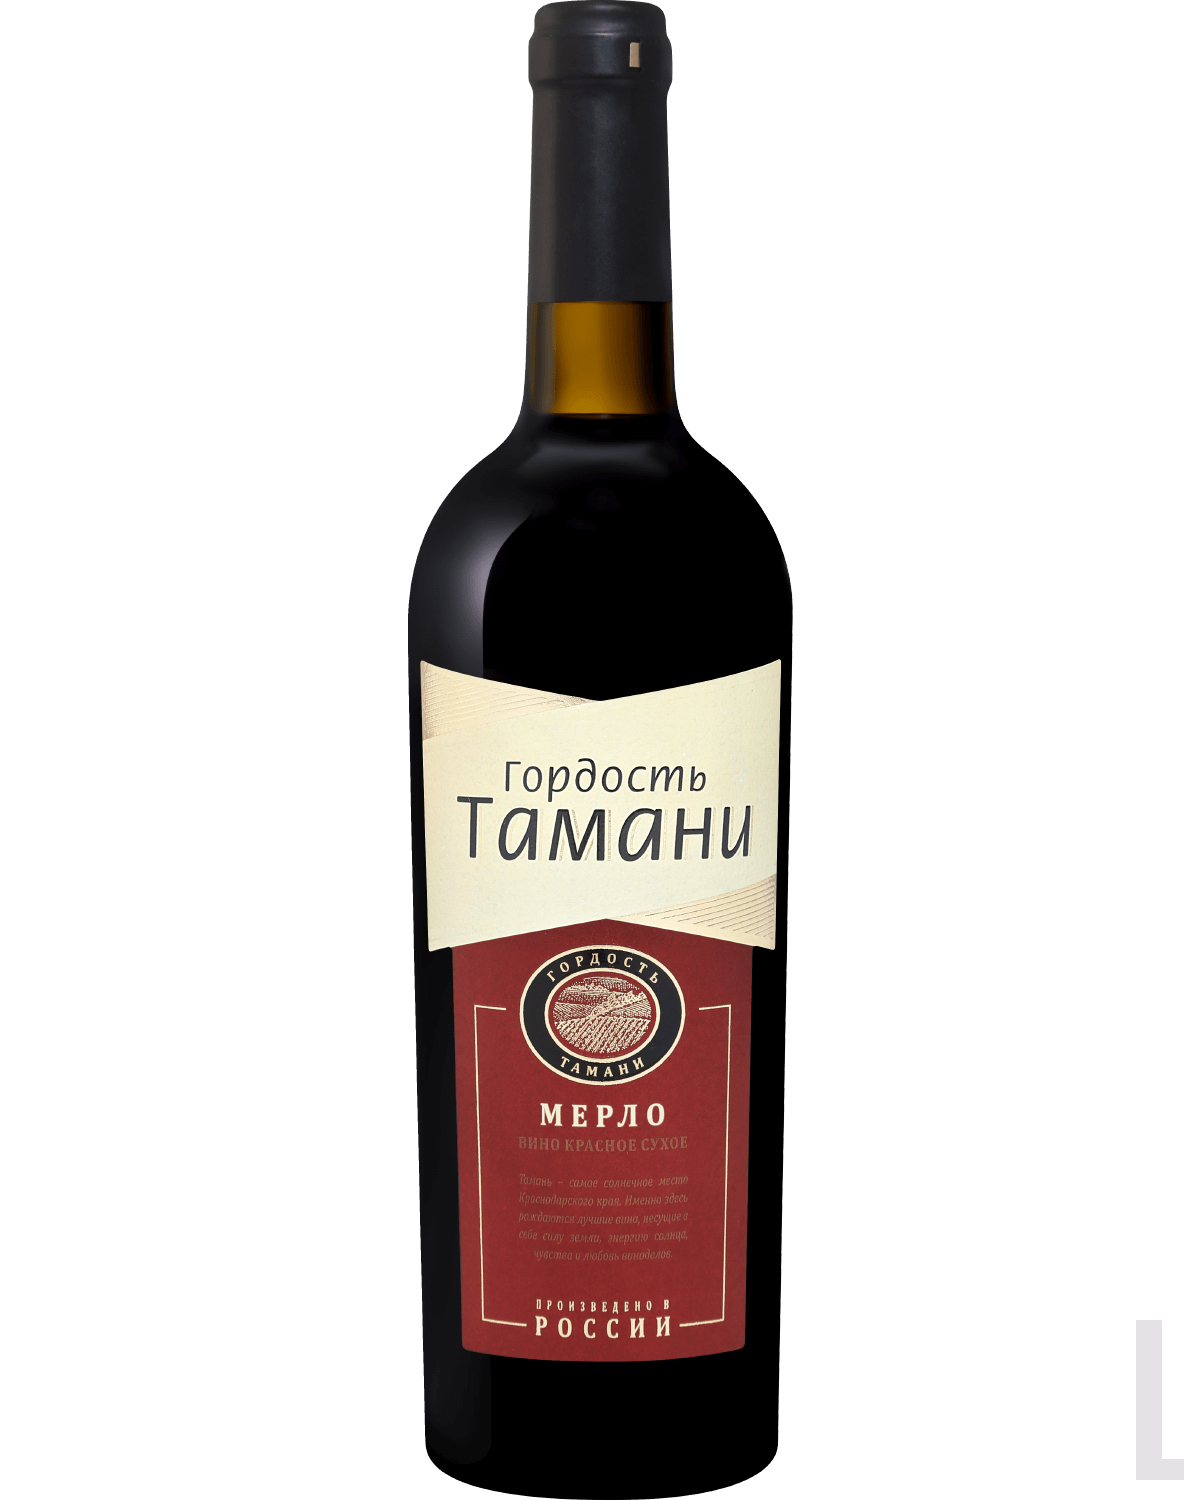 Легендарные вина. Вино Тамань Мерло красное сухое. Вино Мерло Таманское красное сухое. Мерло гордость Тамани. Вино Легенда Тамани Мерло красное сухое 0.75.